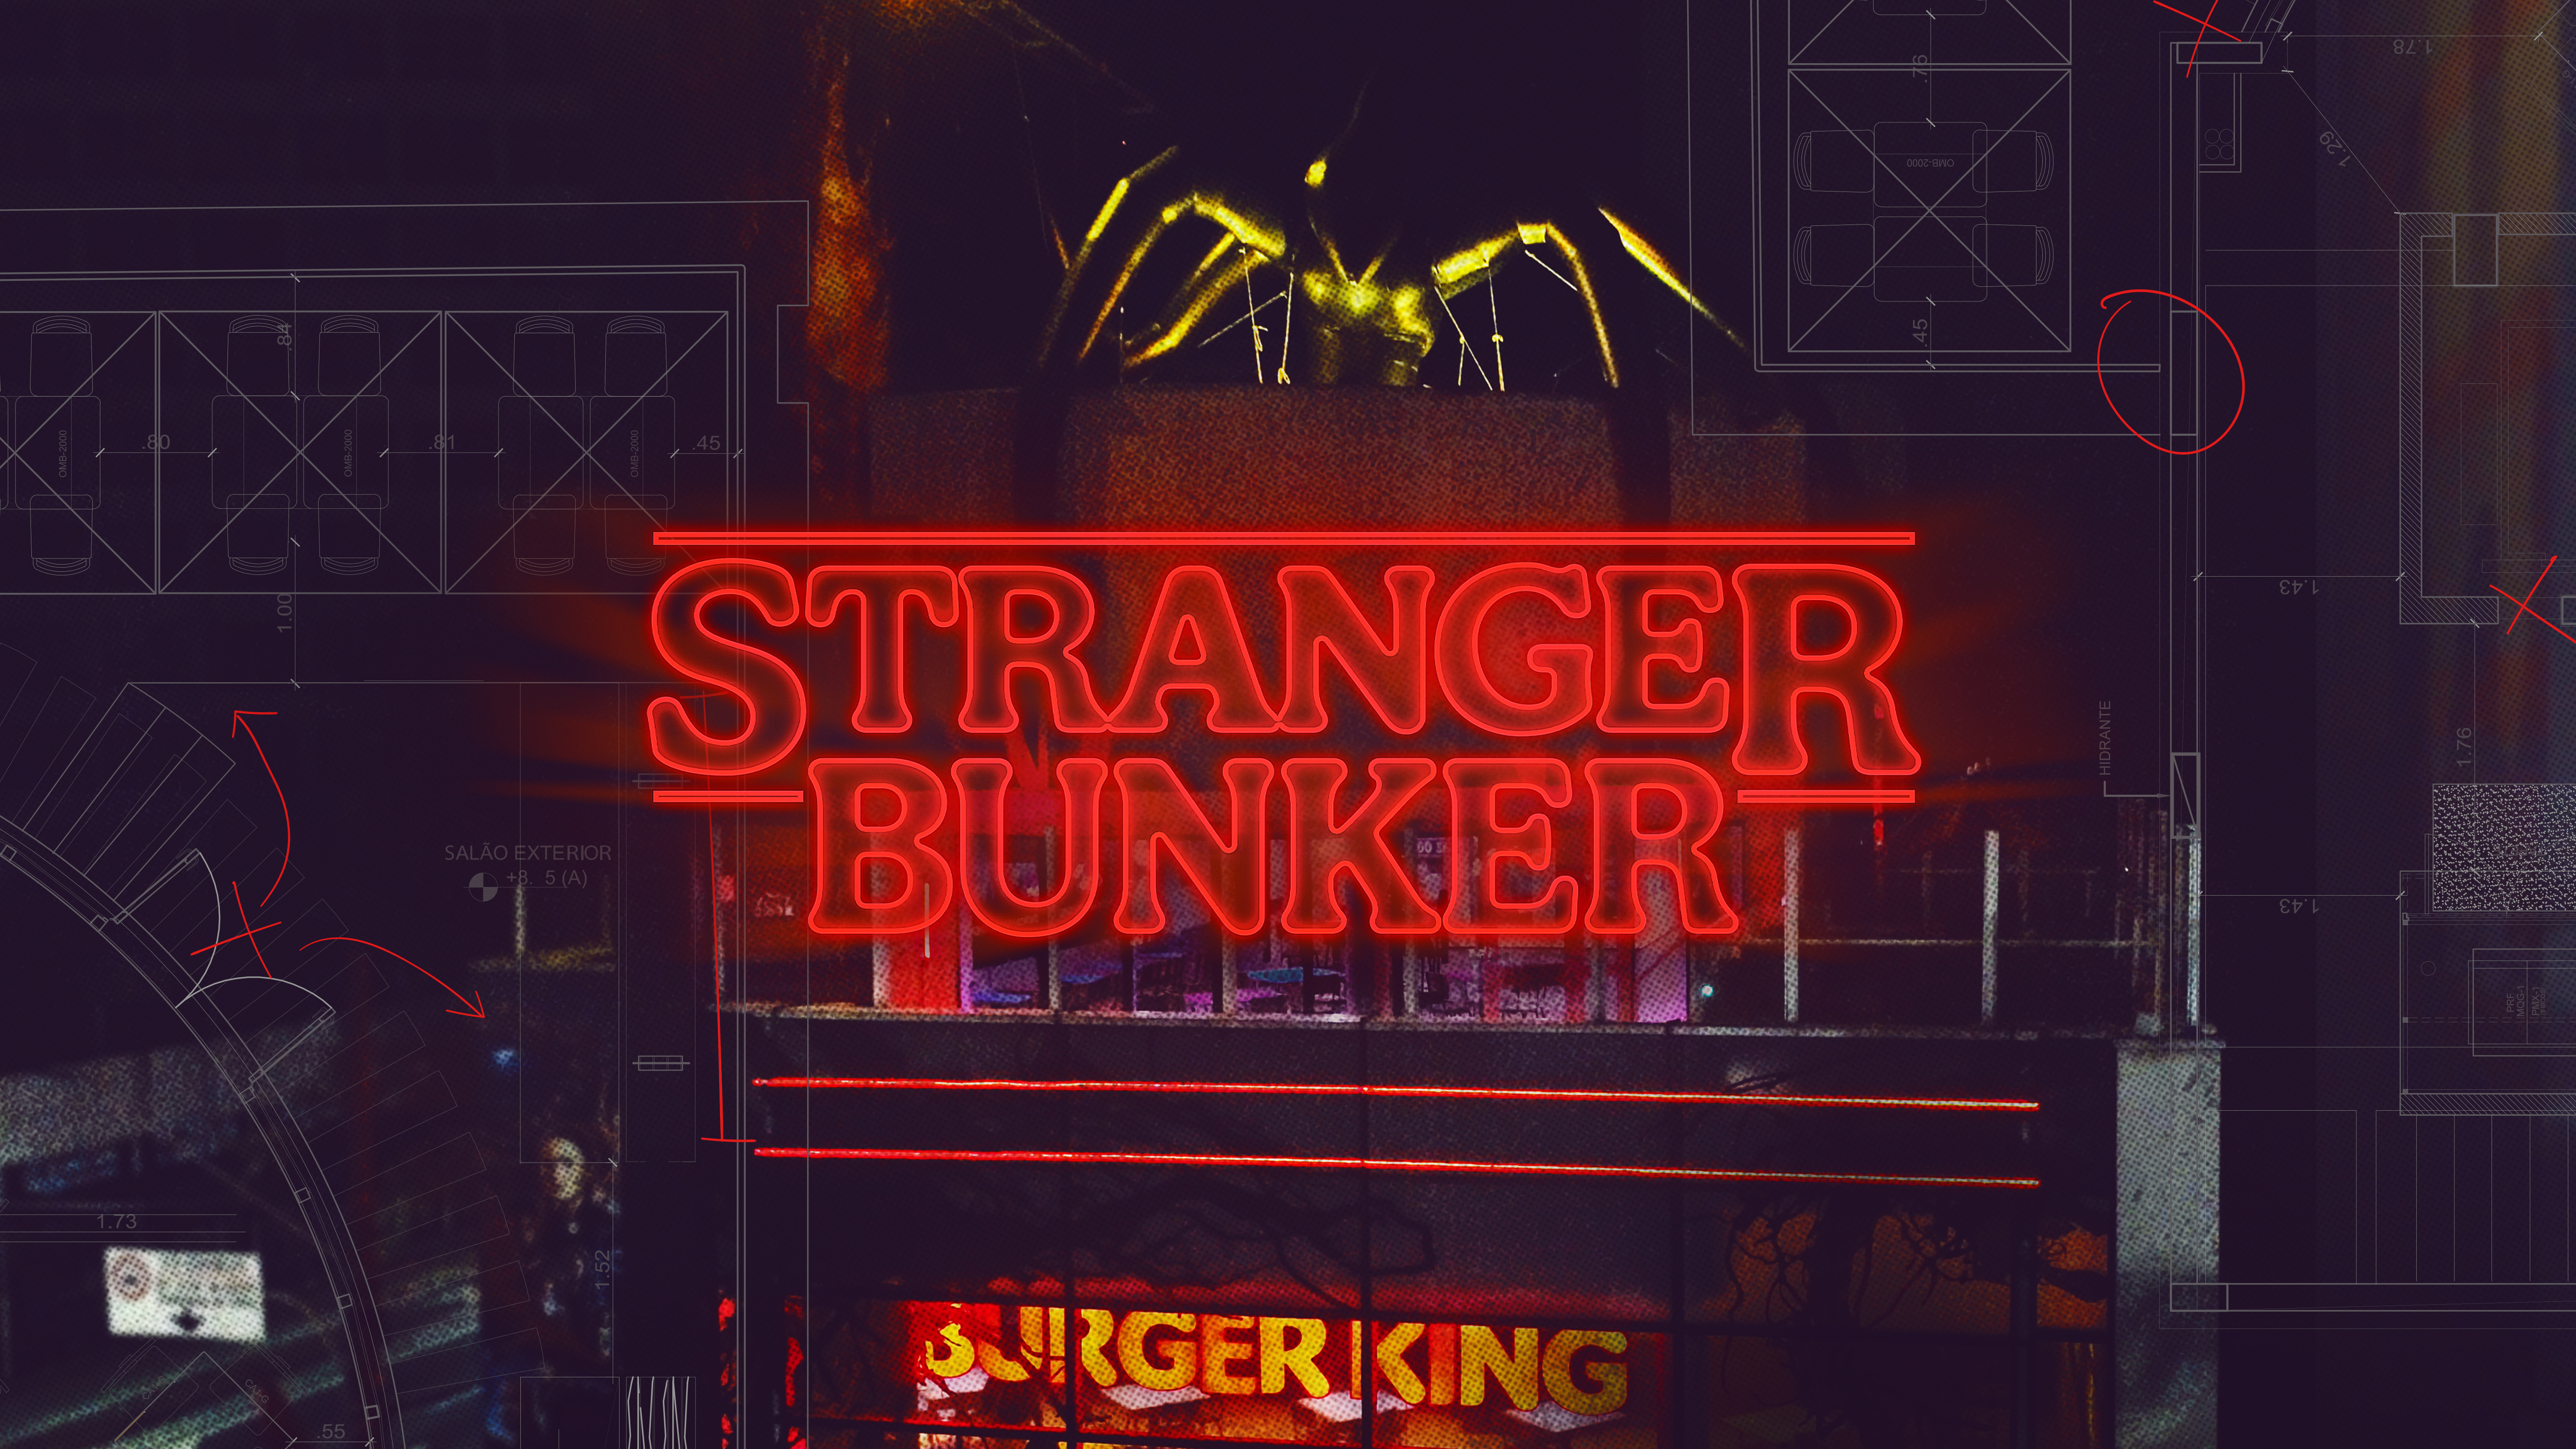 Burger King, Stranger Bunker